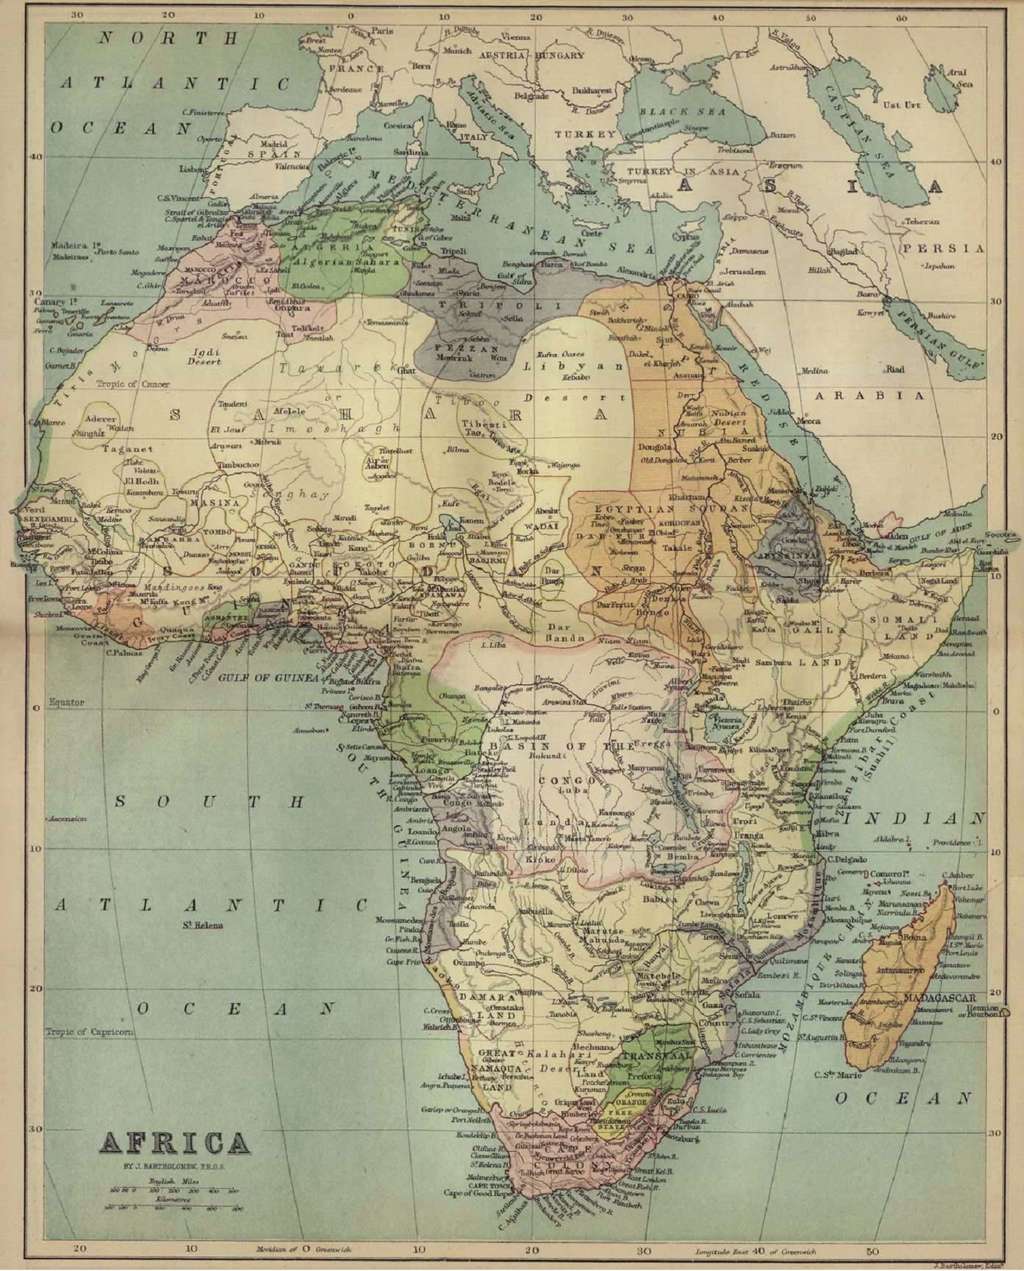 Carte de l'Afrique en 1884 par J. Bartholomew. © Wikimedia Commons, domaine public.